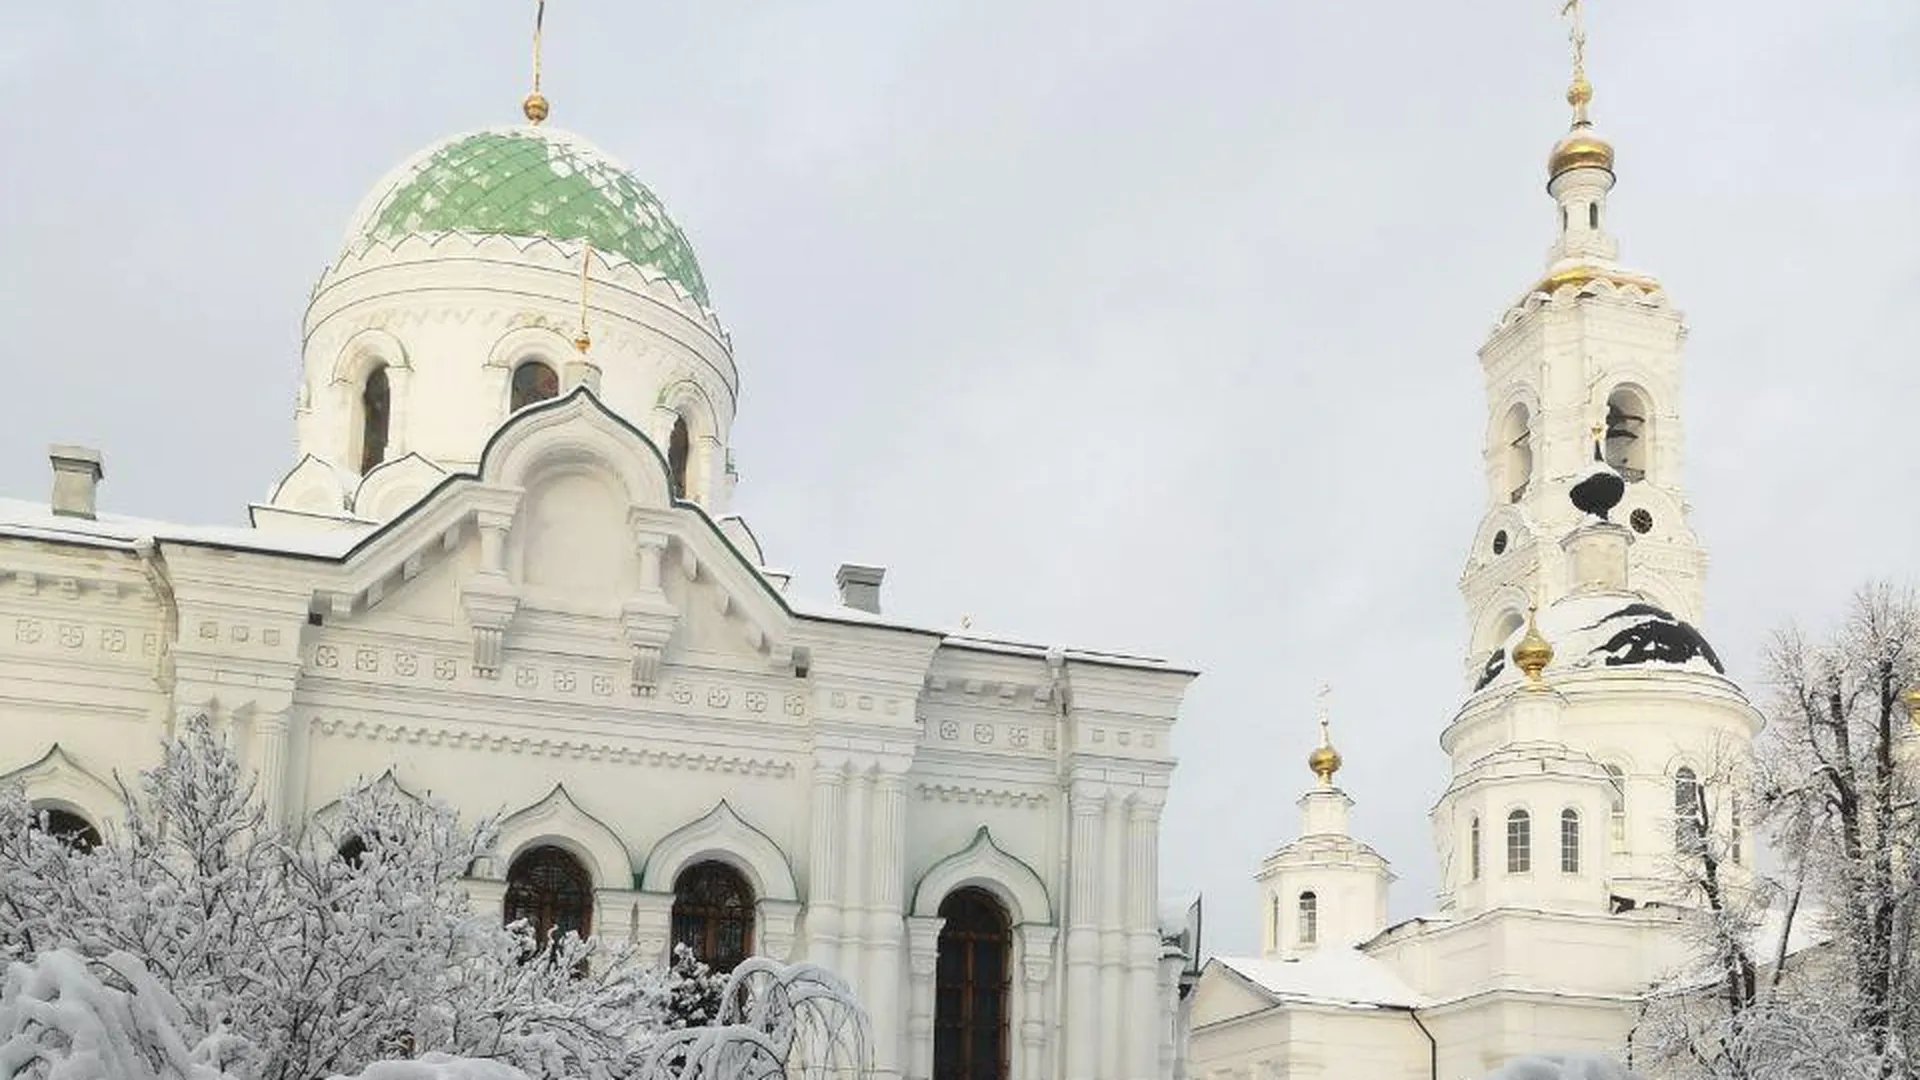 Земельный участок безвозмездно передали Русской Православной Церкви в Богородском округе